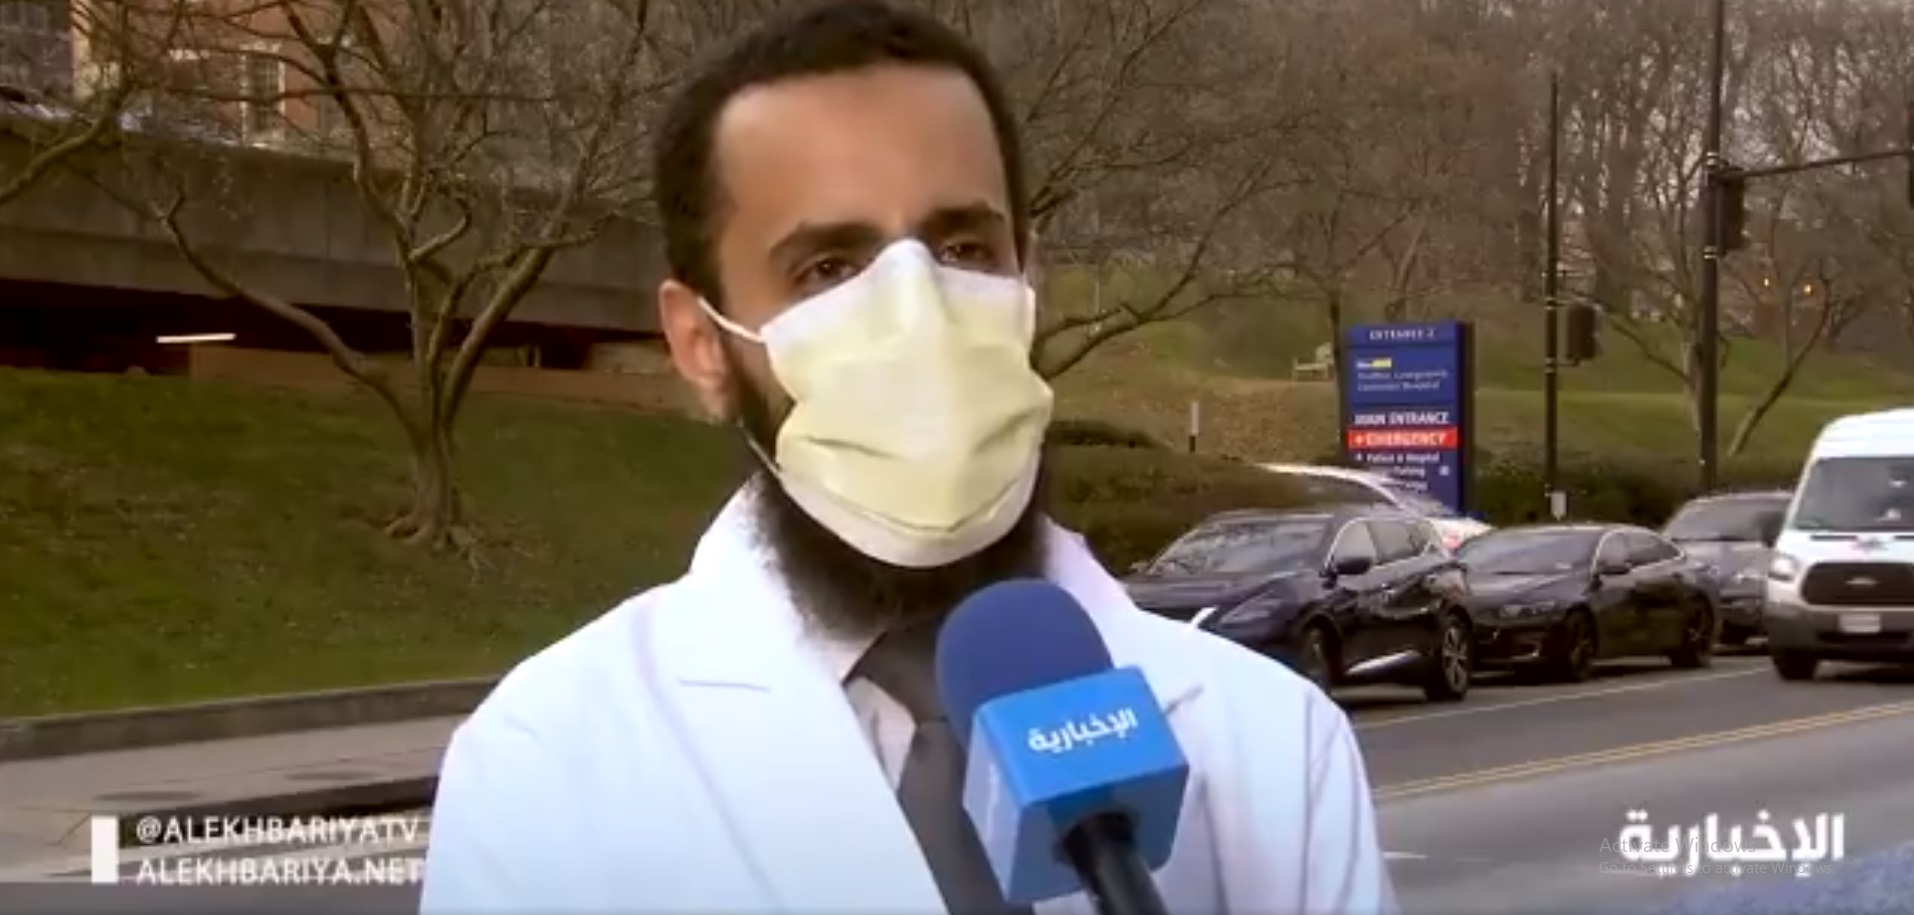 قصة نجاح محمد الشهري الطبيب الذي تخطى اختبار أمريكا الشرس